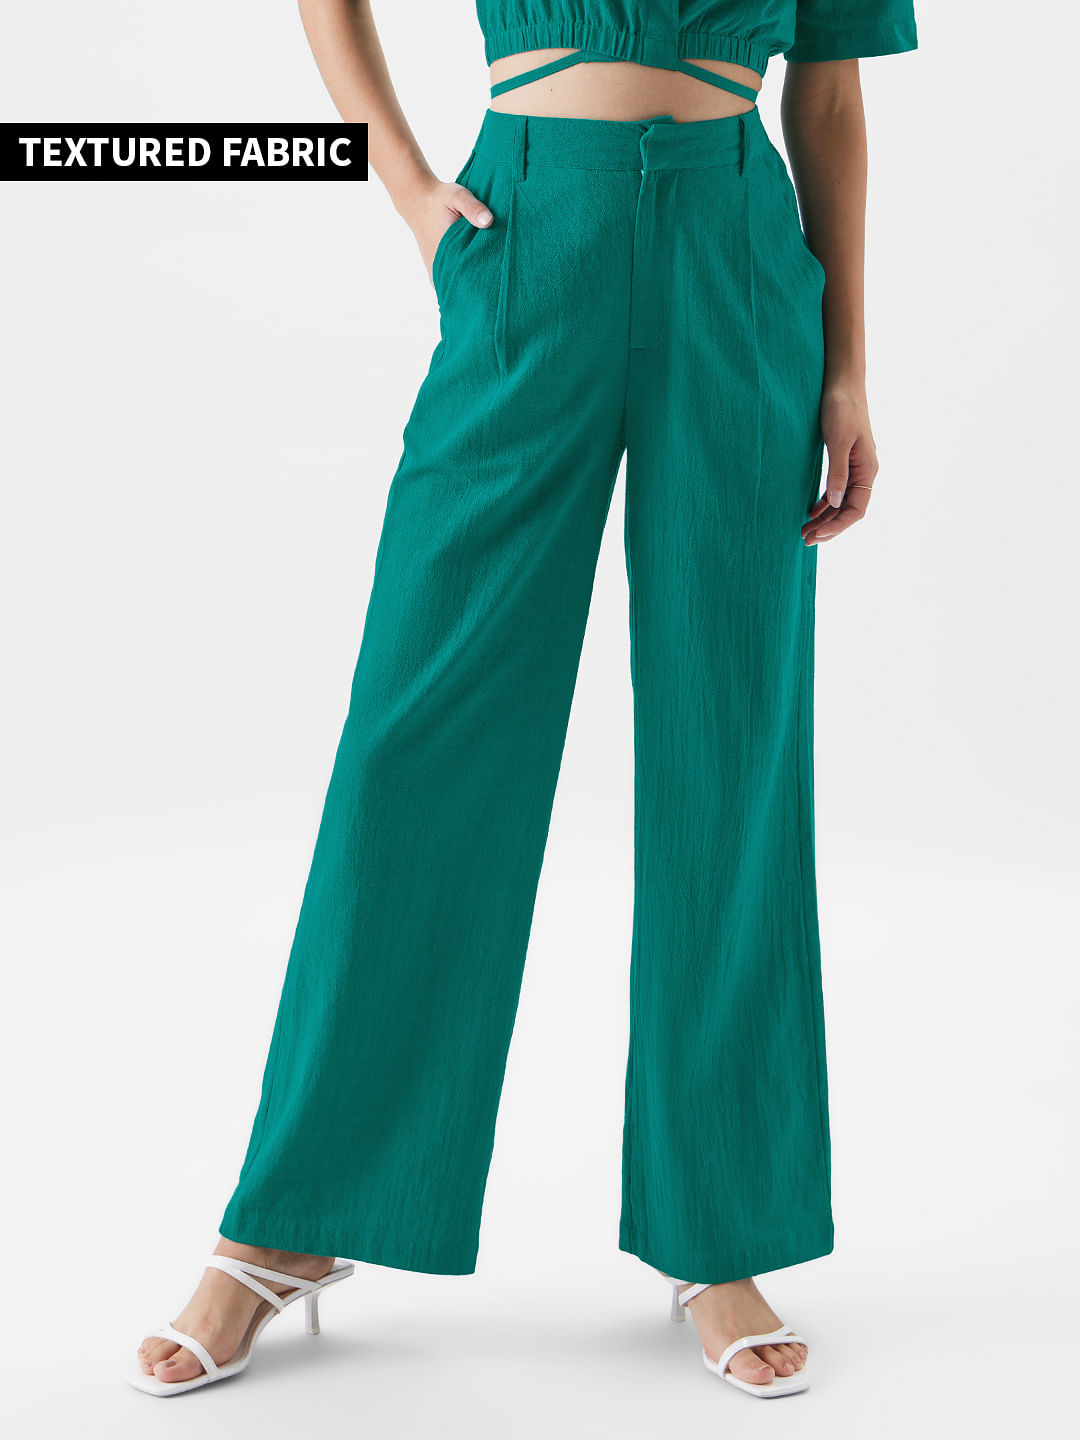 Buy Solids: Teal Green Women Pants Online